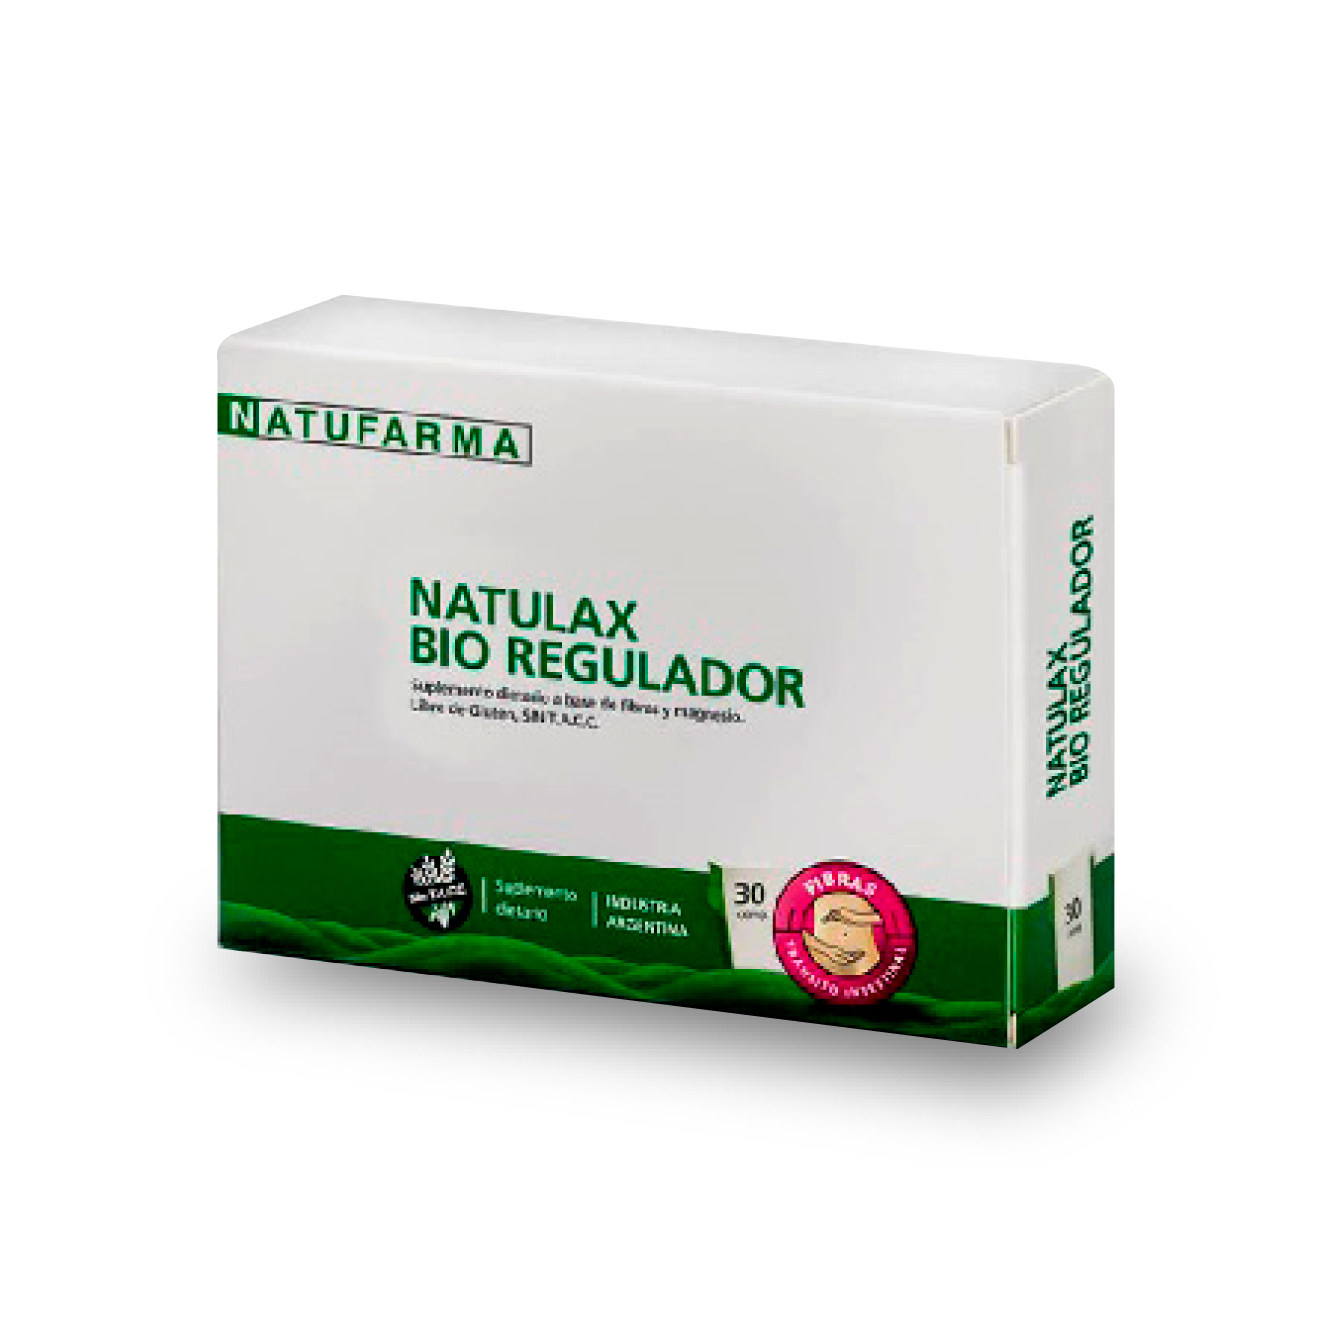 NATUFARMA Natulax Bio Regulador x 30 comprimidos LIQ.DE STOCK